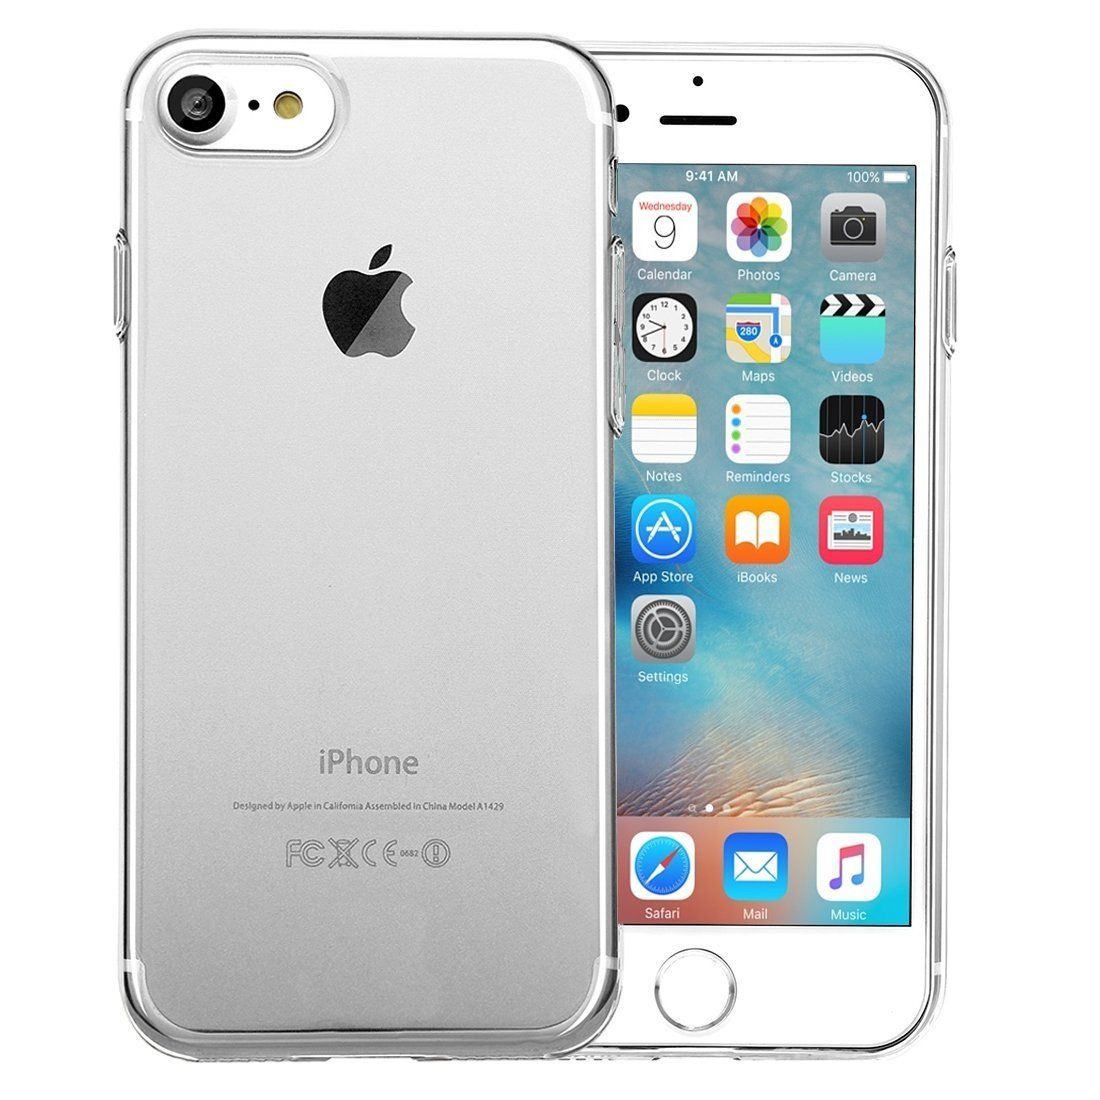 Phalanx bedriegen Entertainment iPhone 6 Plus/ 6S Plus Cover Transparant Case -